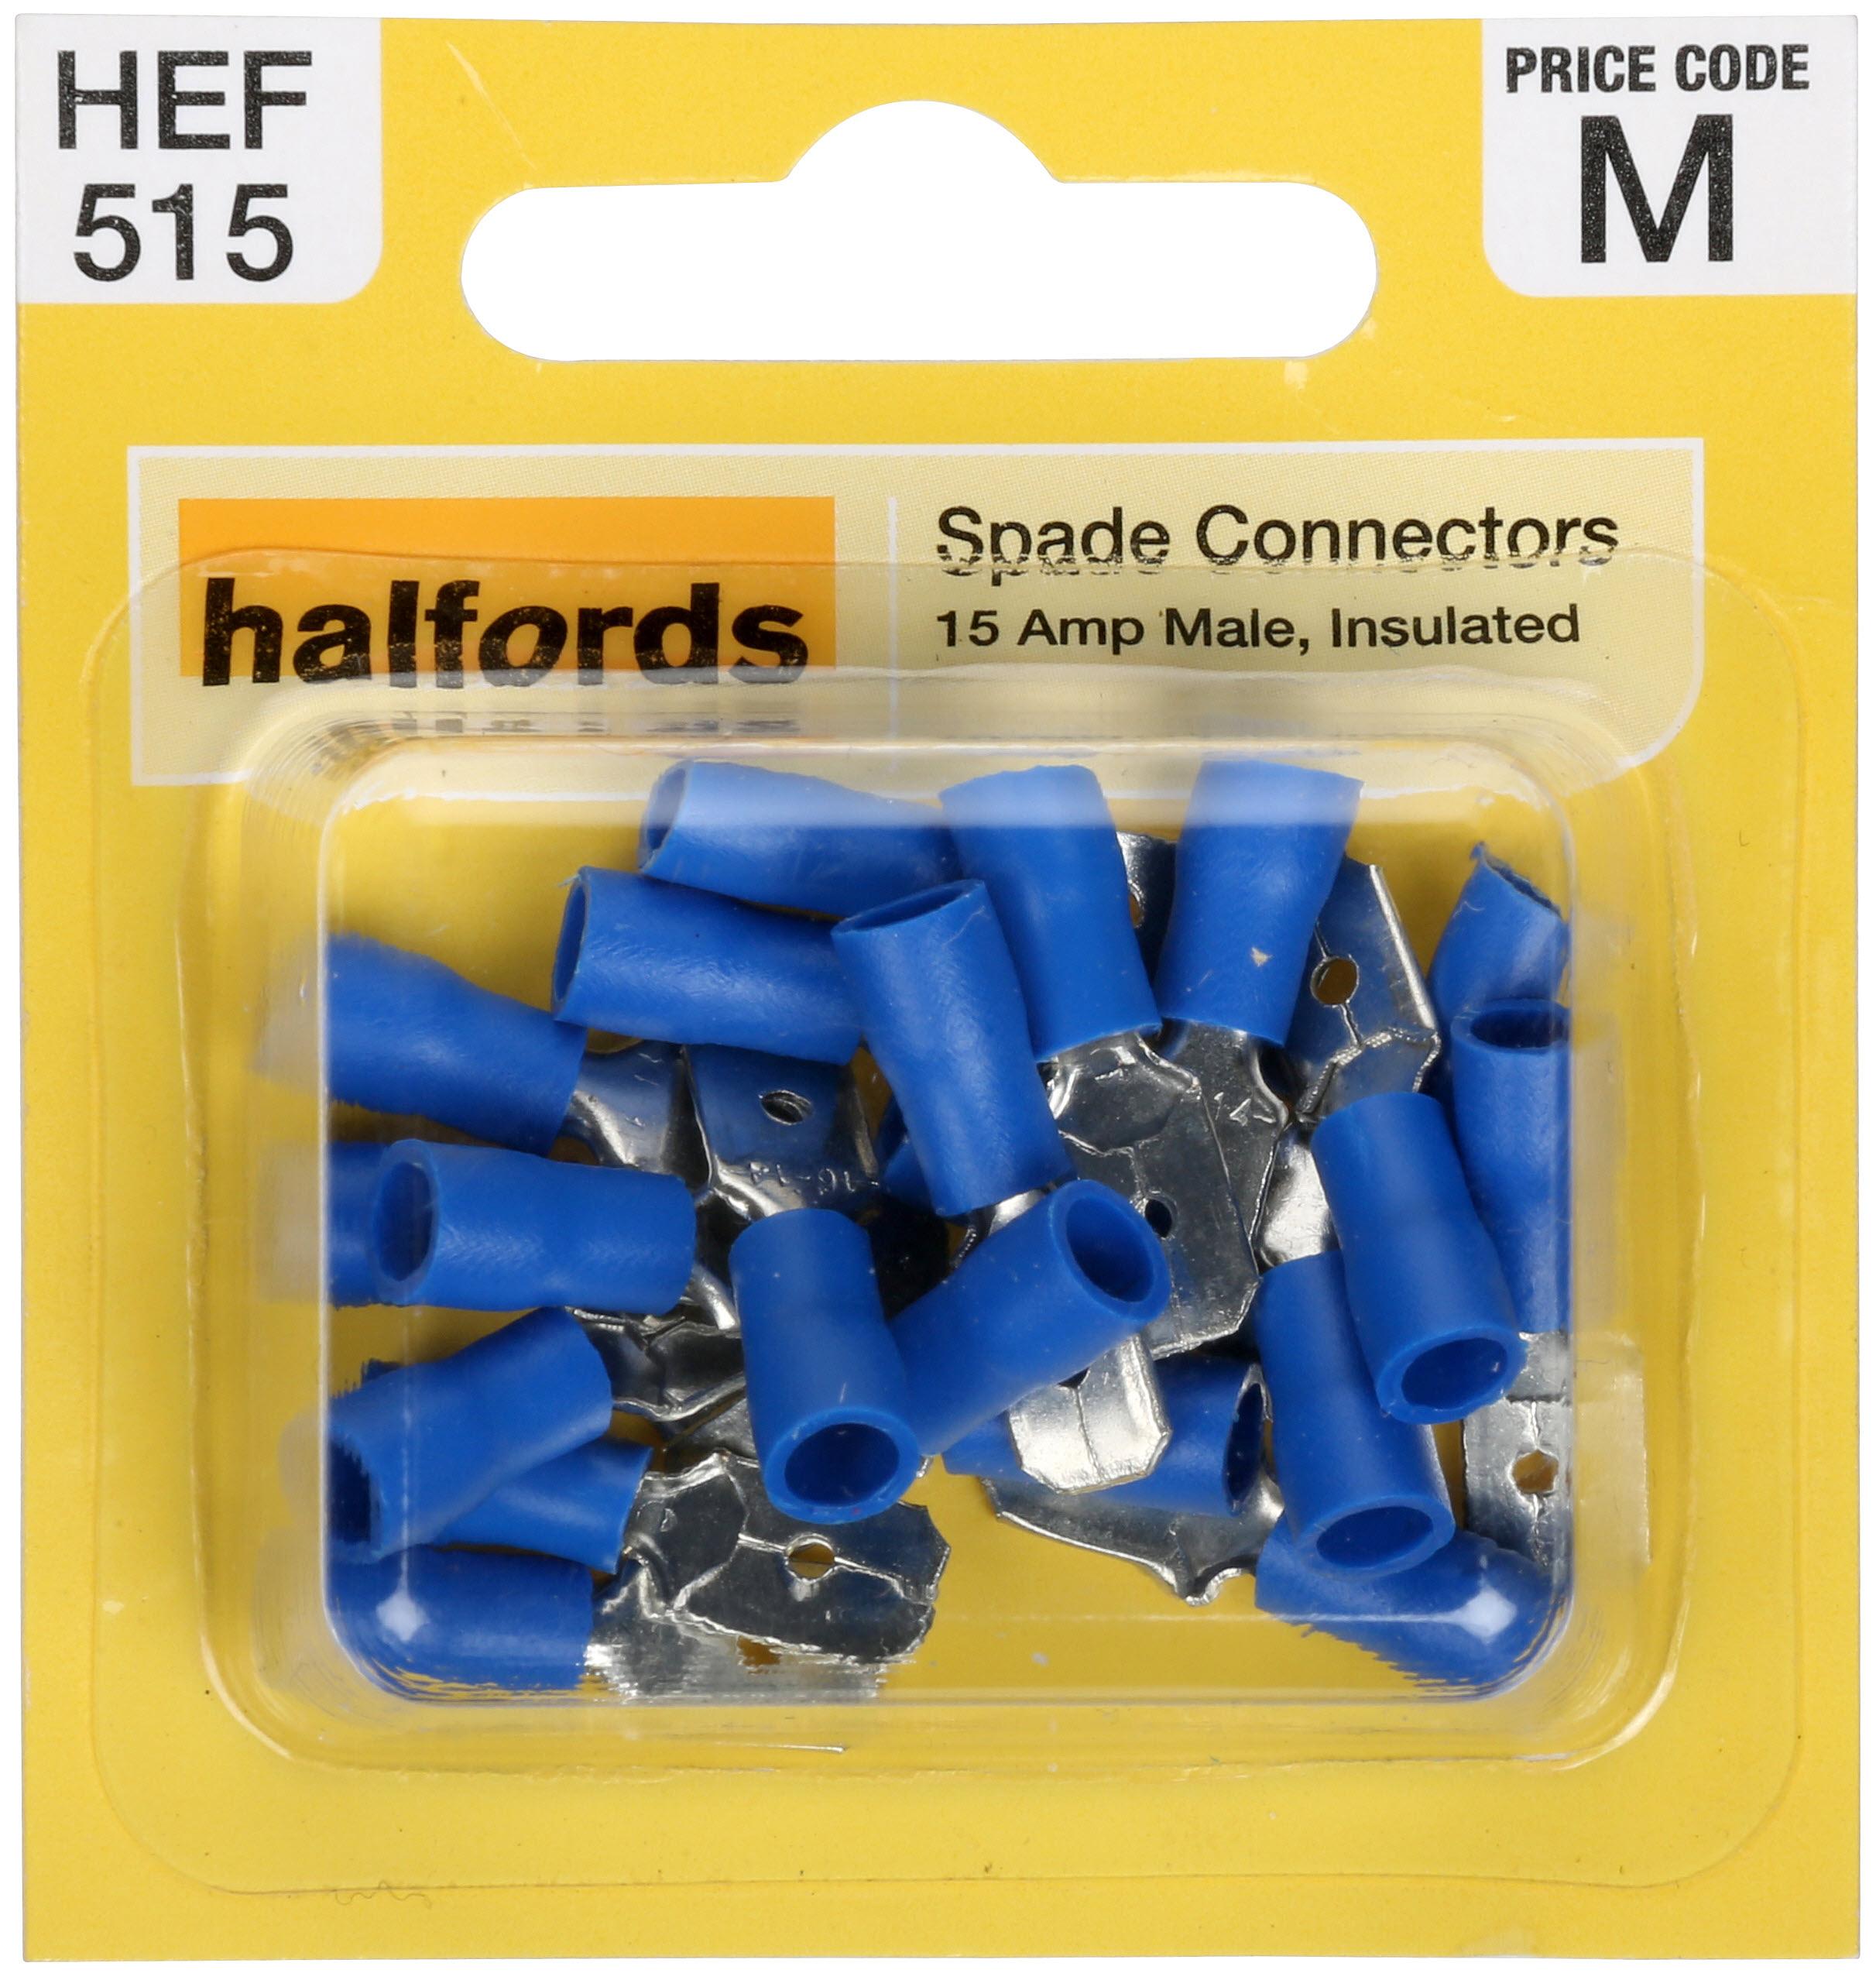 Halfords Spade Connectors (Hef515) 15 Amp/Male